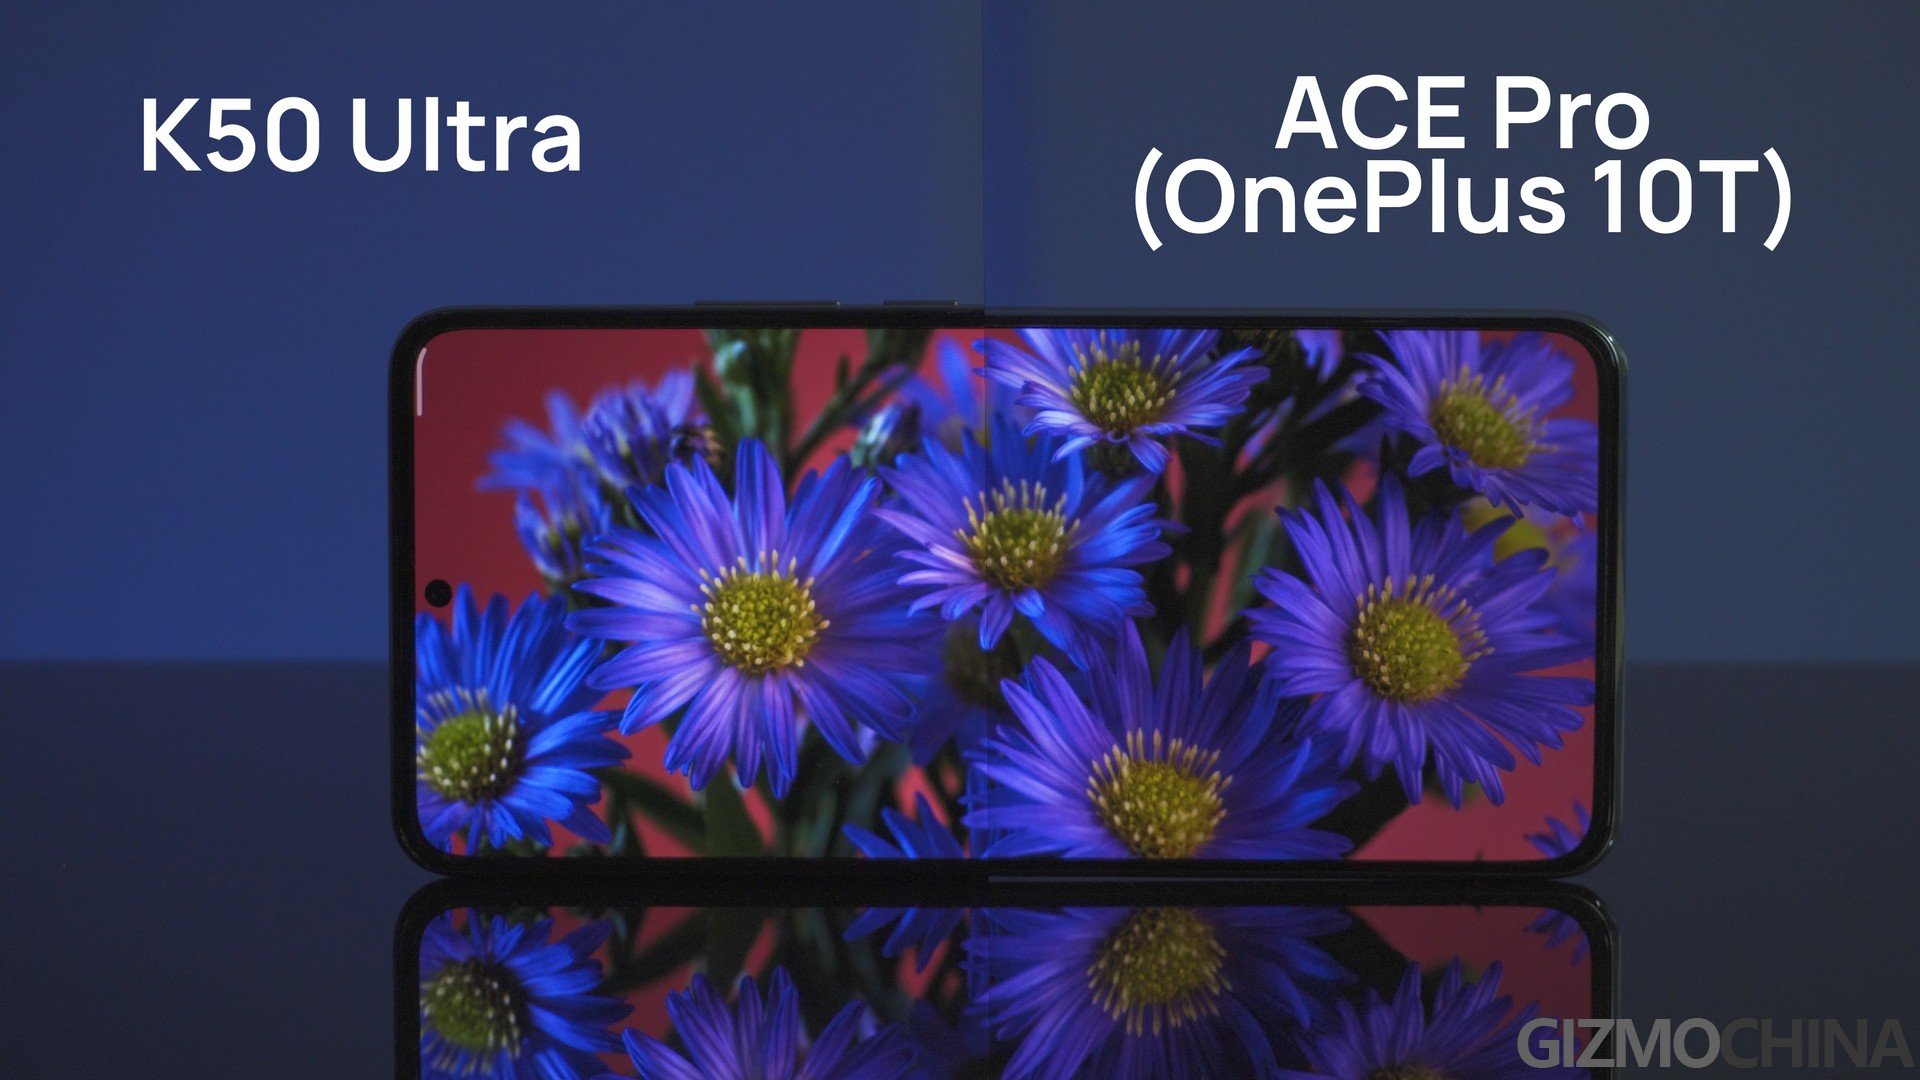 display - OnePlus 10T vs Redmi K50 Ultra 43